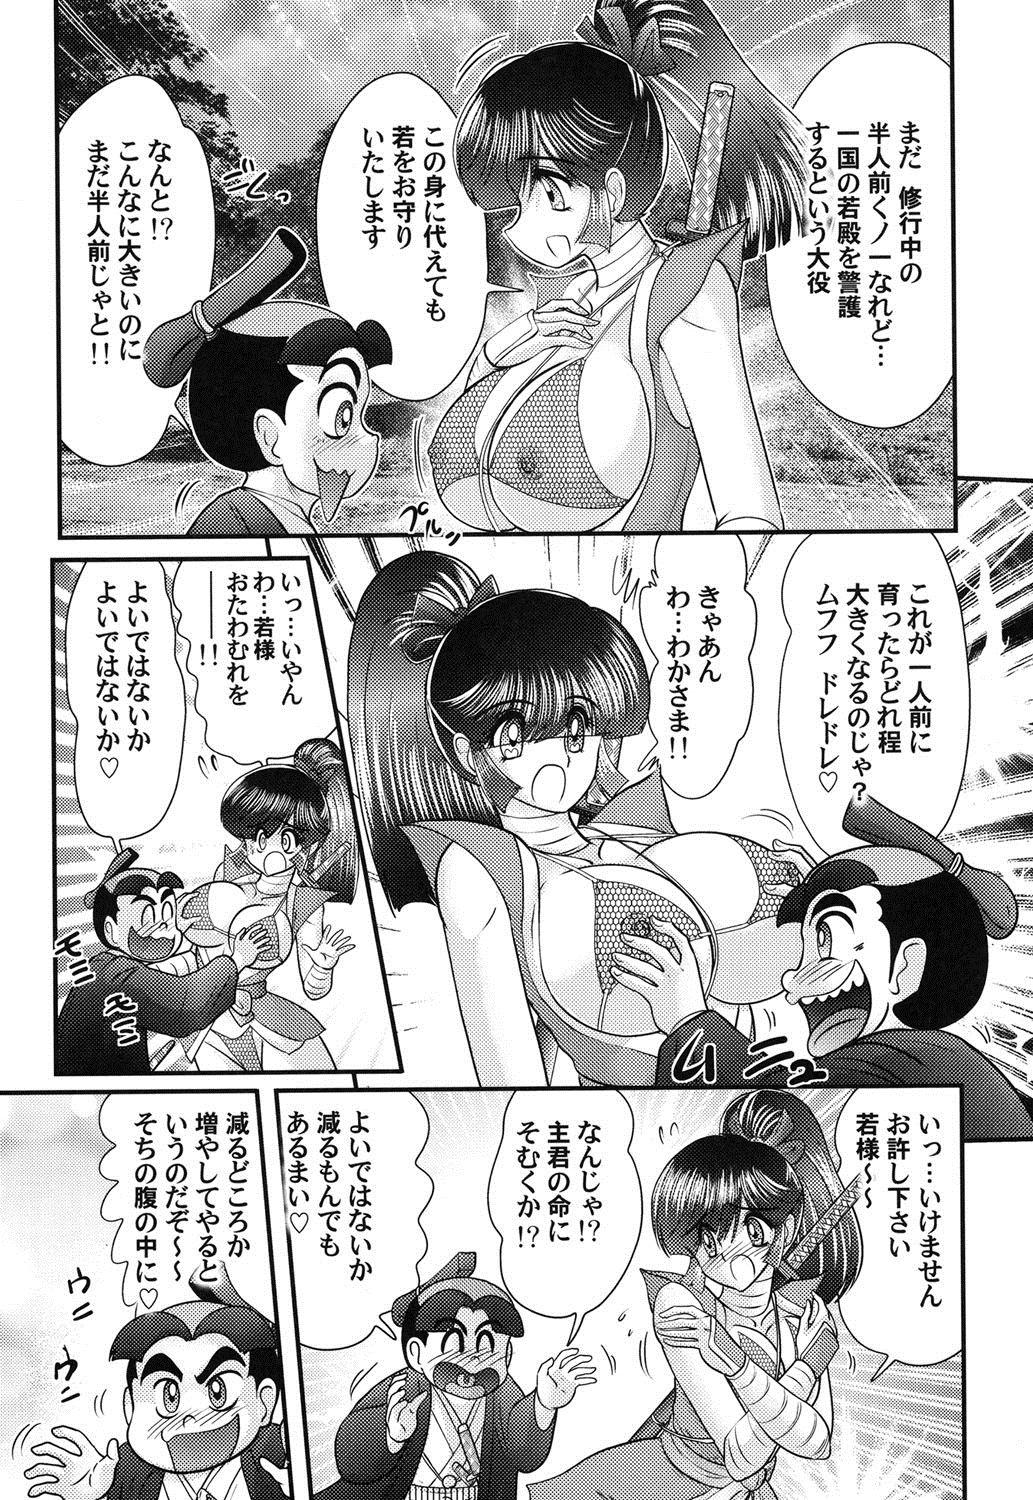 Culo Grande Mitsu nure ninjya Shinmai ninja Suzuka Punk - Page 6